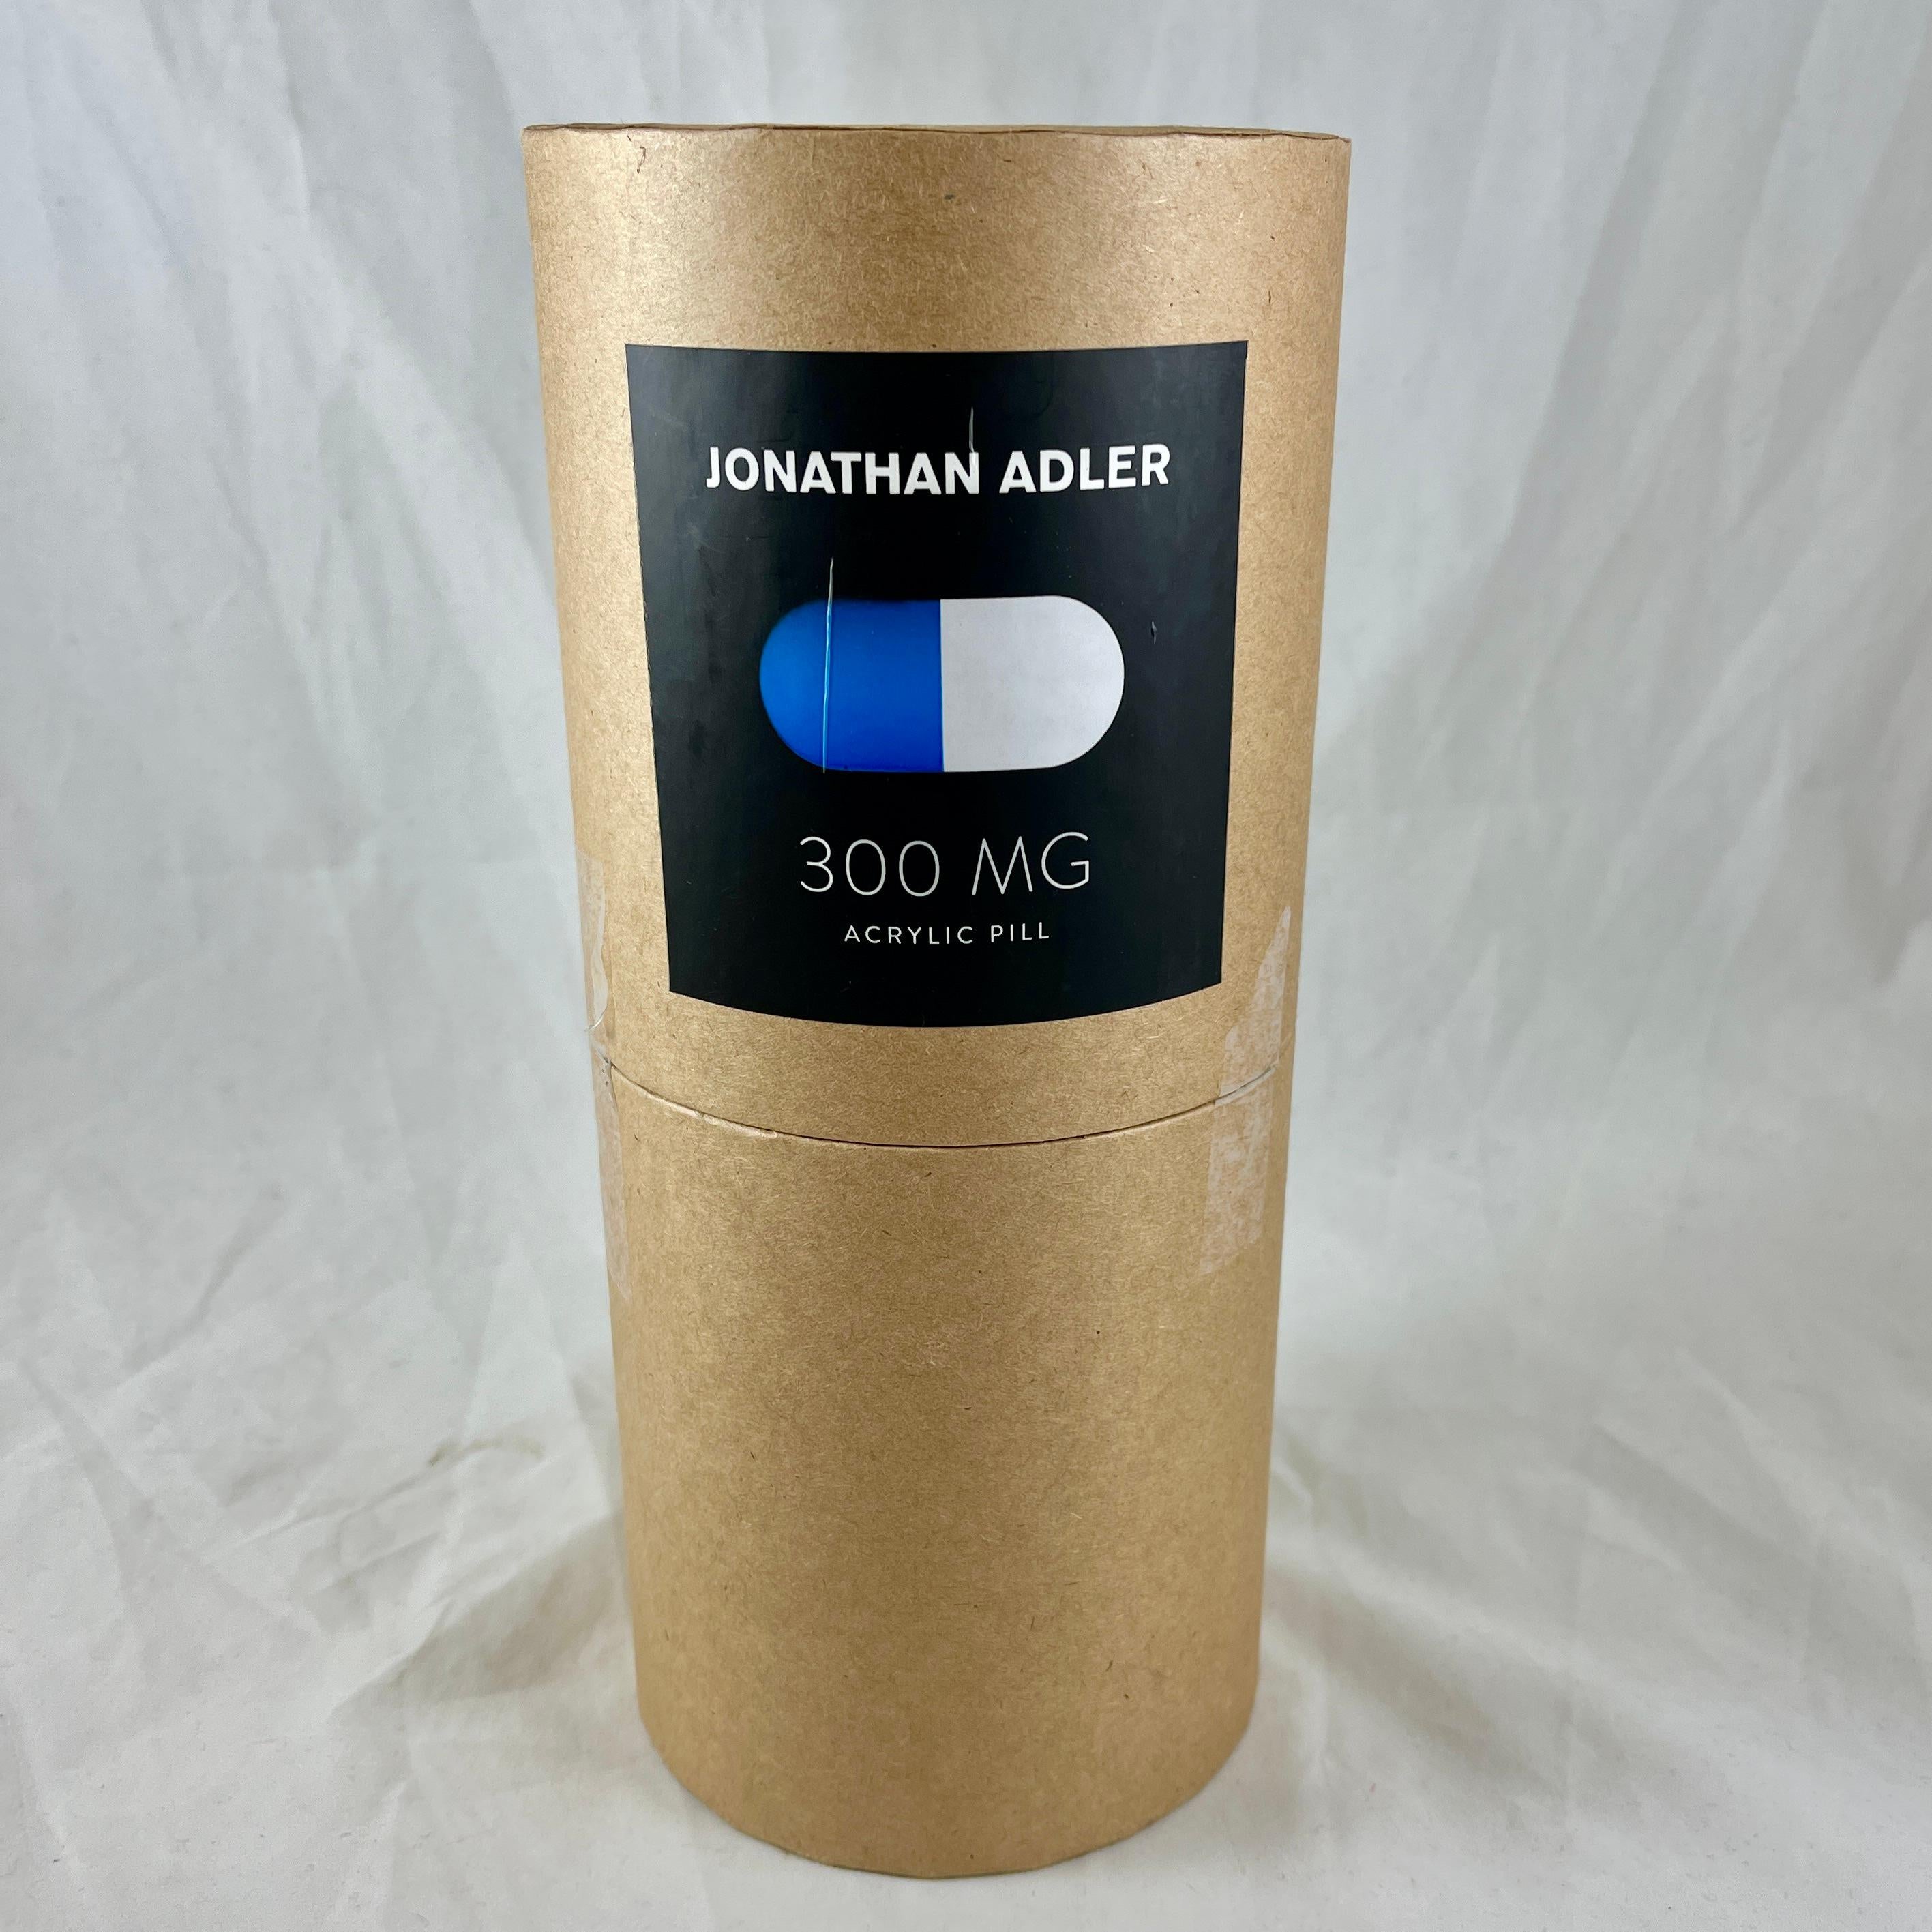 Molded Jonathan Adler Acrylic Pop Art Pill Sculpture, 300 MG Blue